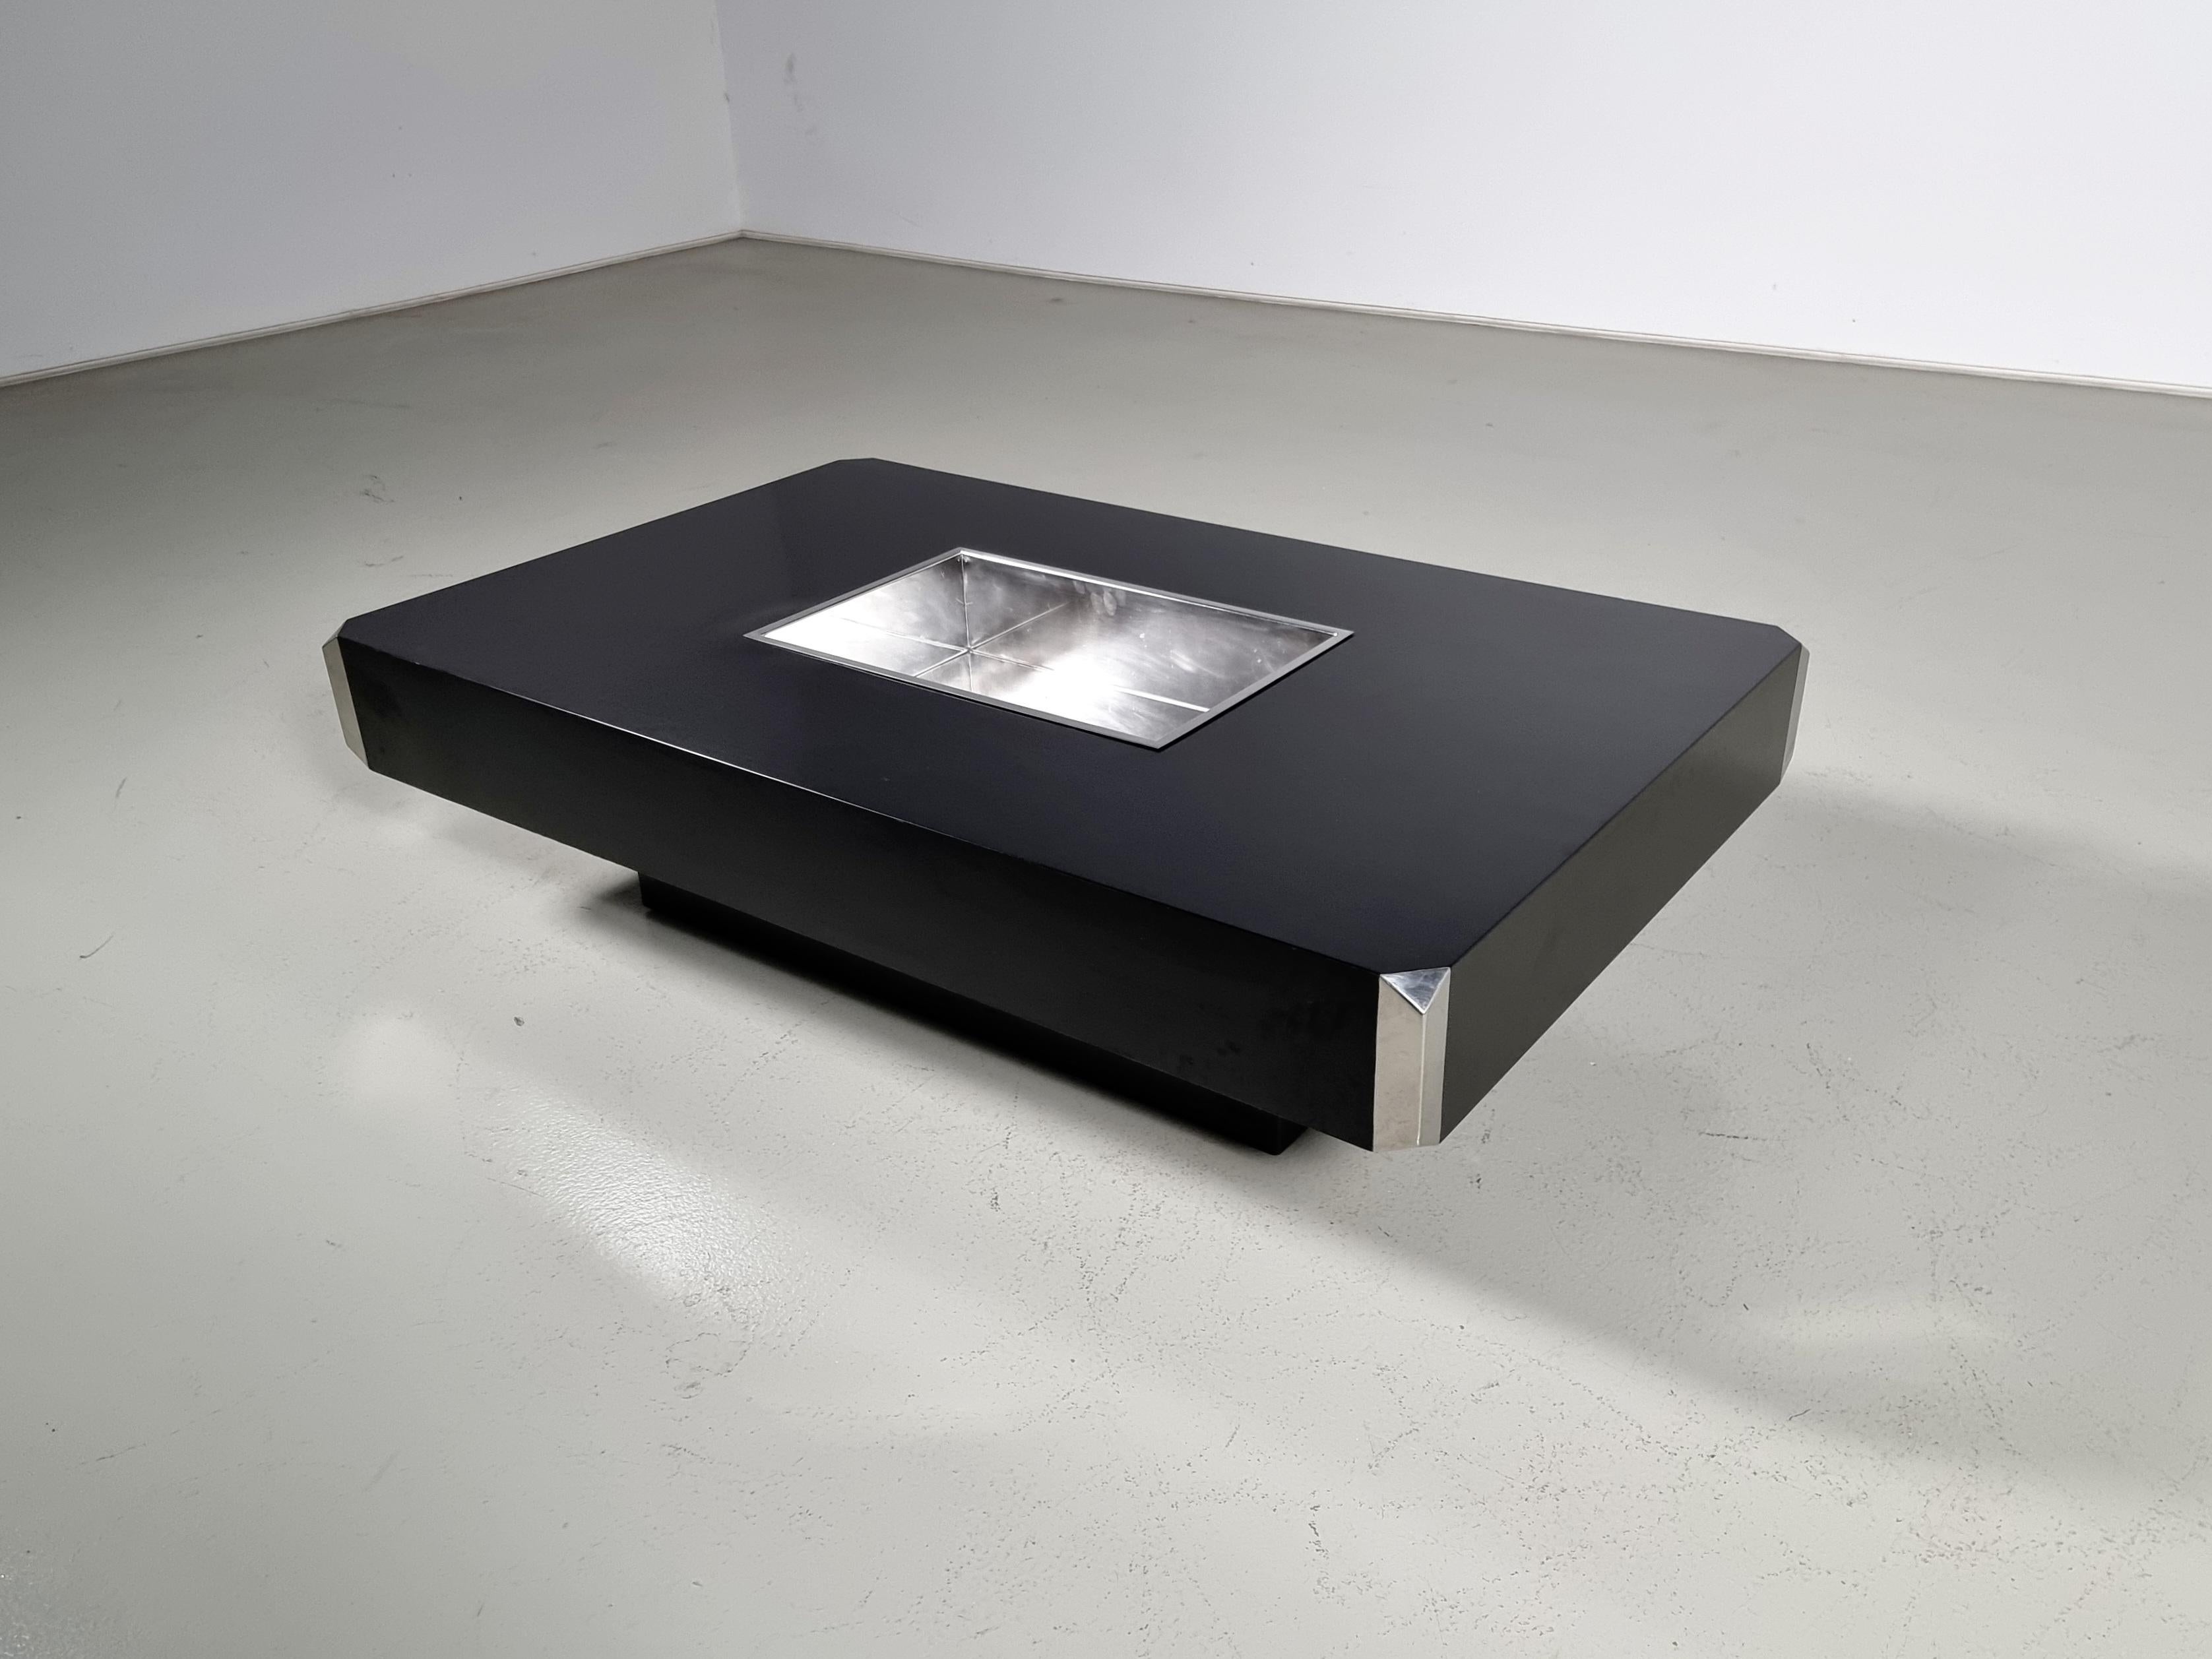 Table basse Willy Rizzo pour Mario Sabot des années 1970

Fabriqué dans un chrome magnifique avec une base en bois laqué noir.
La base encastrée donne l'impression que la table flotte et allège l'esthétique.  L'une des particularités de cette table